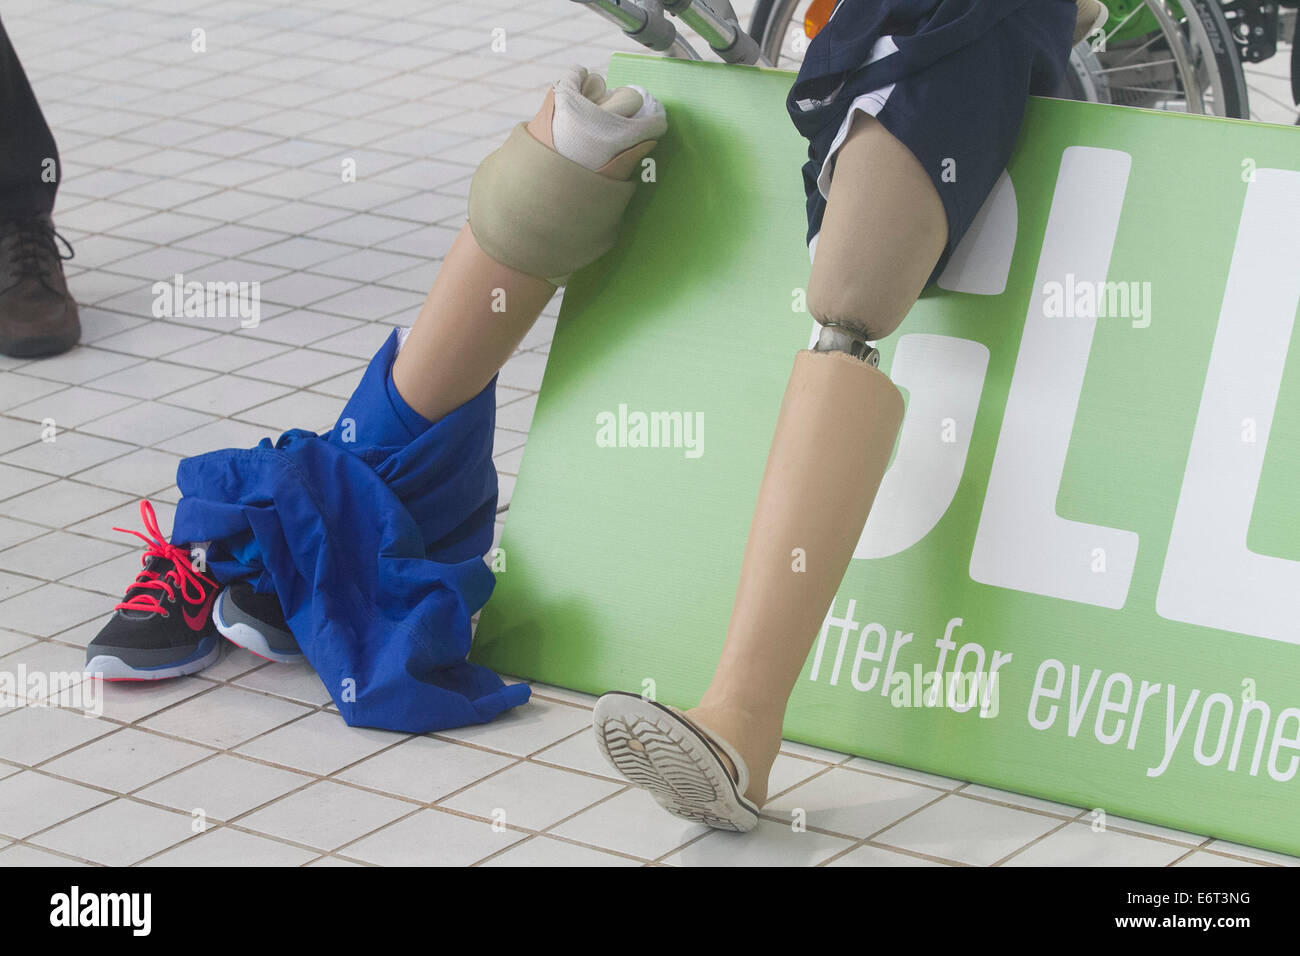 Stratford London,UK. 30 août 2014. Une prothèse de jambe en y compris les athlètes paralympiques médaillés GO concurrence au Centre aquatique emblématique du parc olympique à Stratford pour concourir pour la première fois depuis les Jeux Paralympiques de Londres 2012. Credit : amer ghazzal/Alamy Live News Banque D'Images